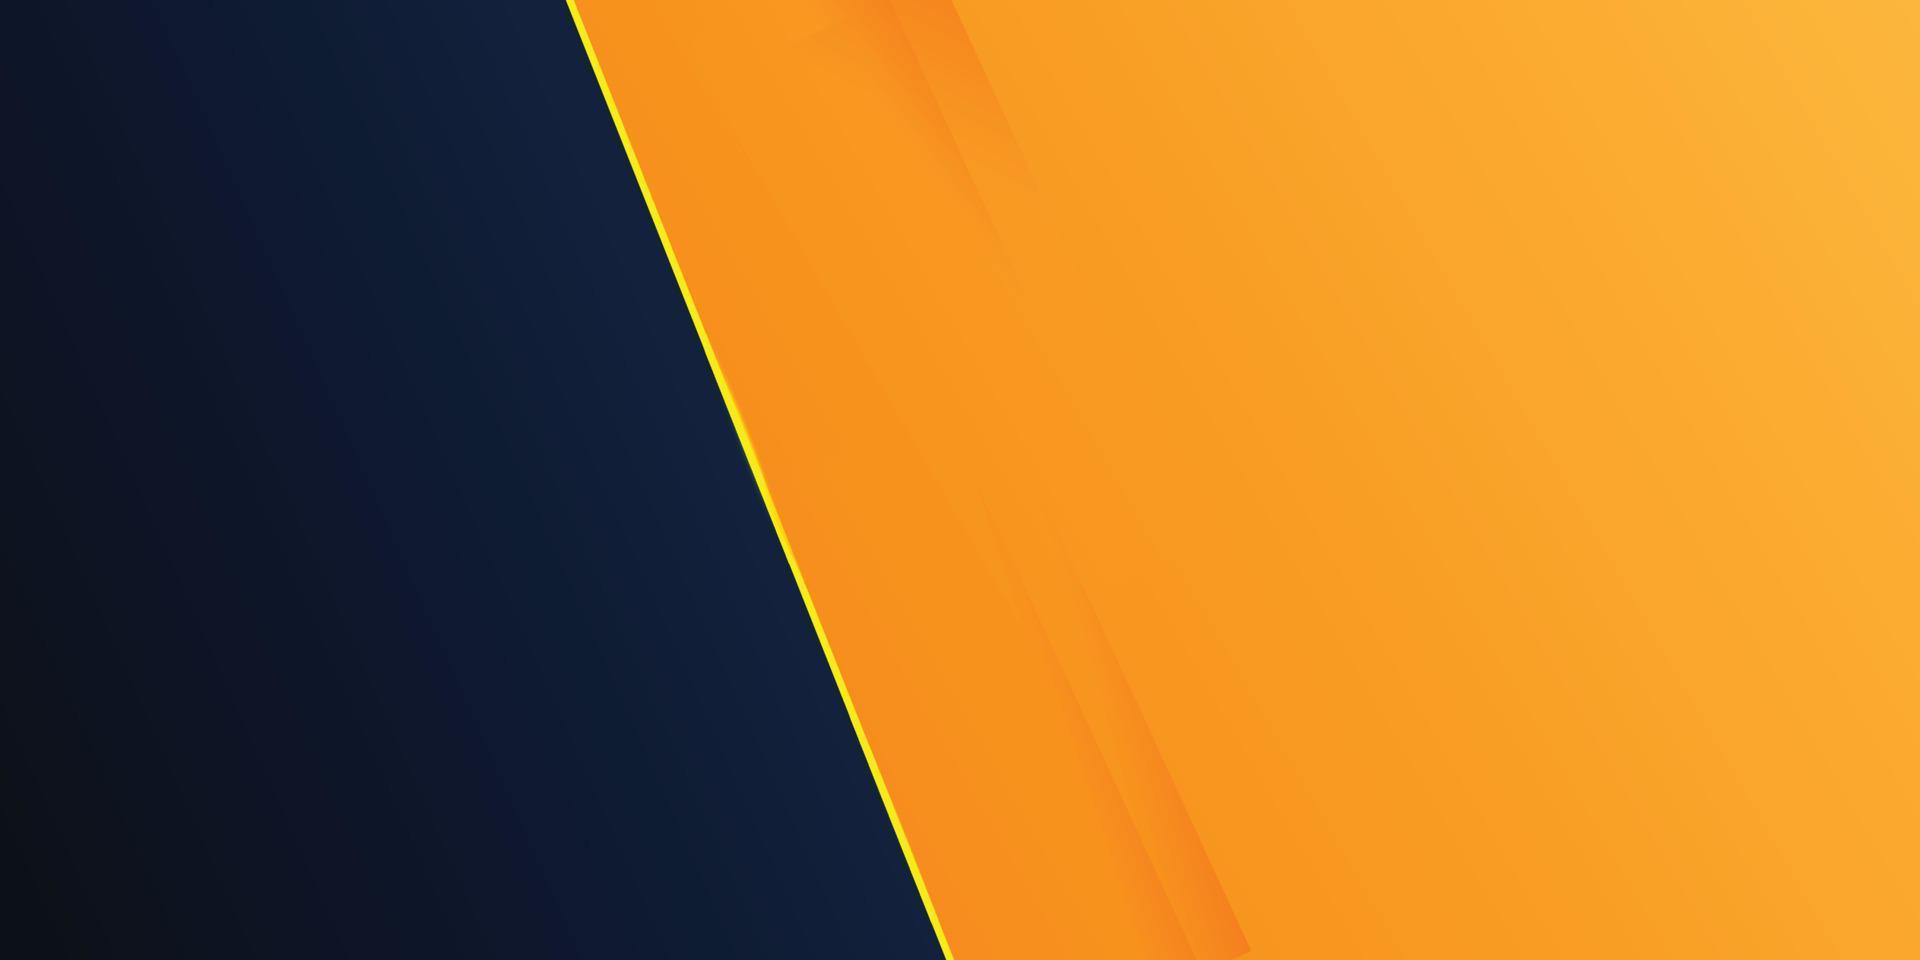 Modern black and orange color abstract background for Presentation design. orange minimal abstract.orange abstract background design. use for poster, template, background shapes, illustration, vector